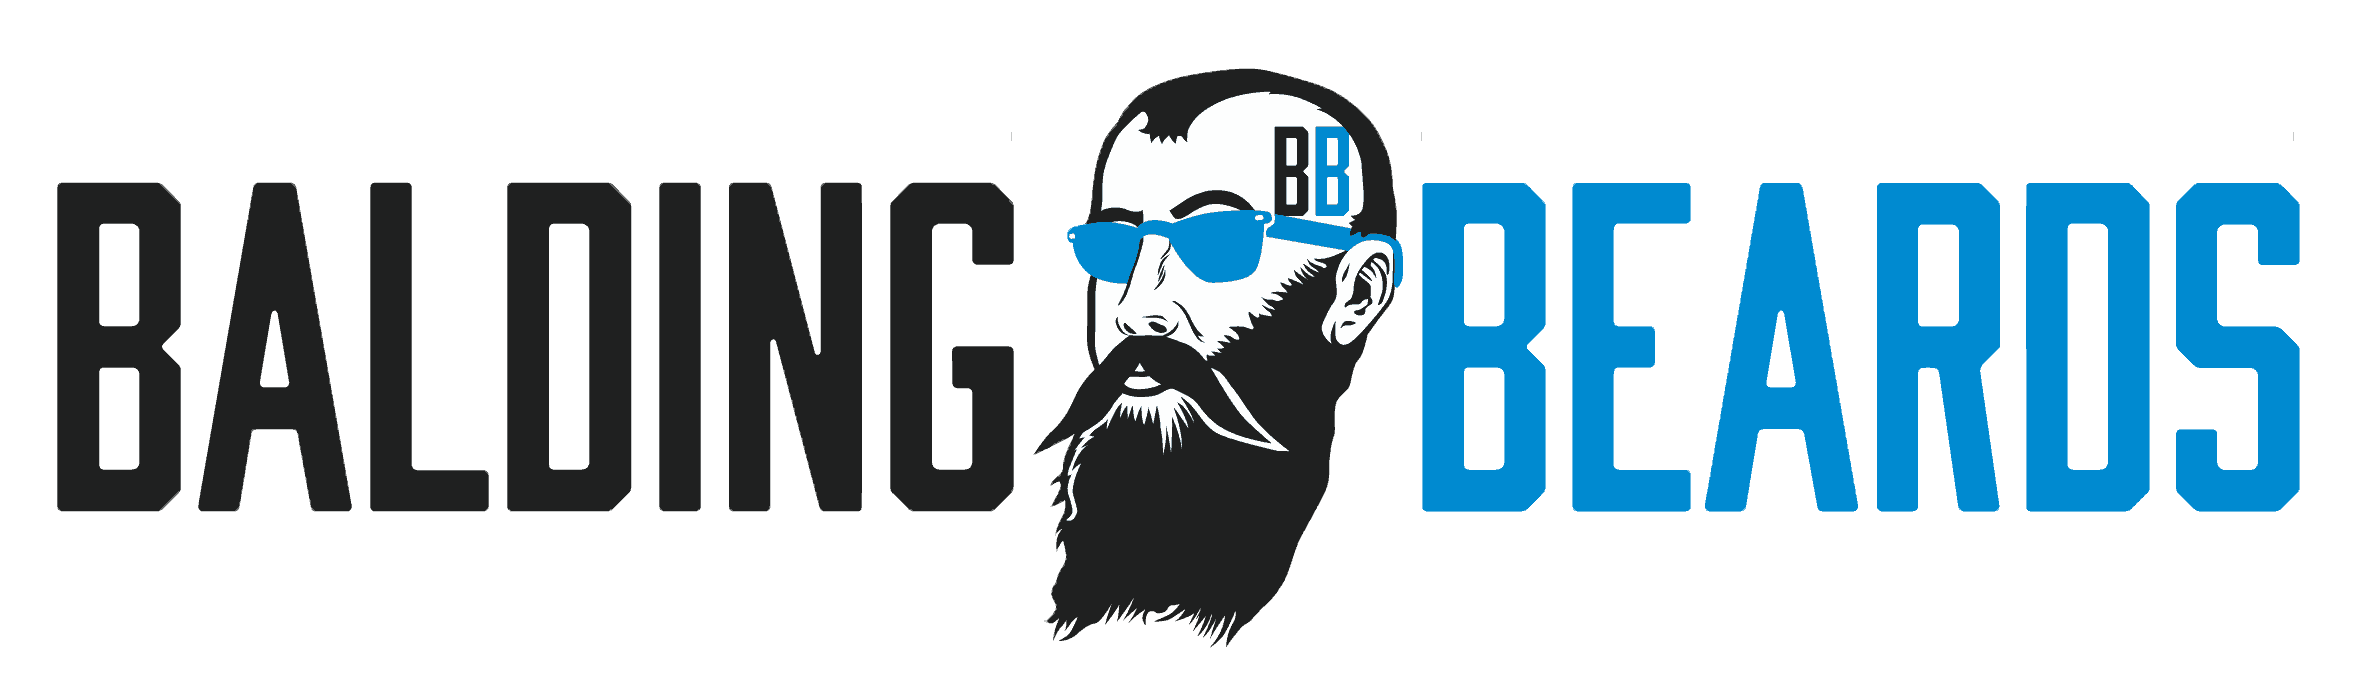 Balding Beards - Professor Fuzzworthy Best Beard Shampoo Review